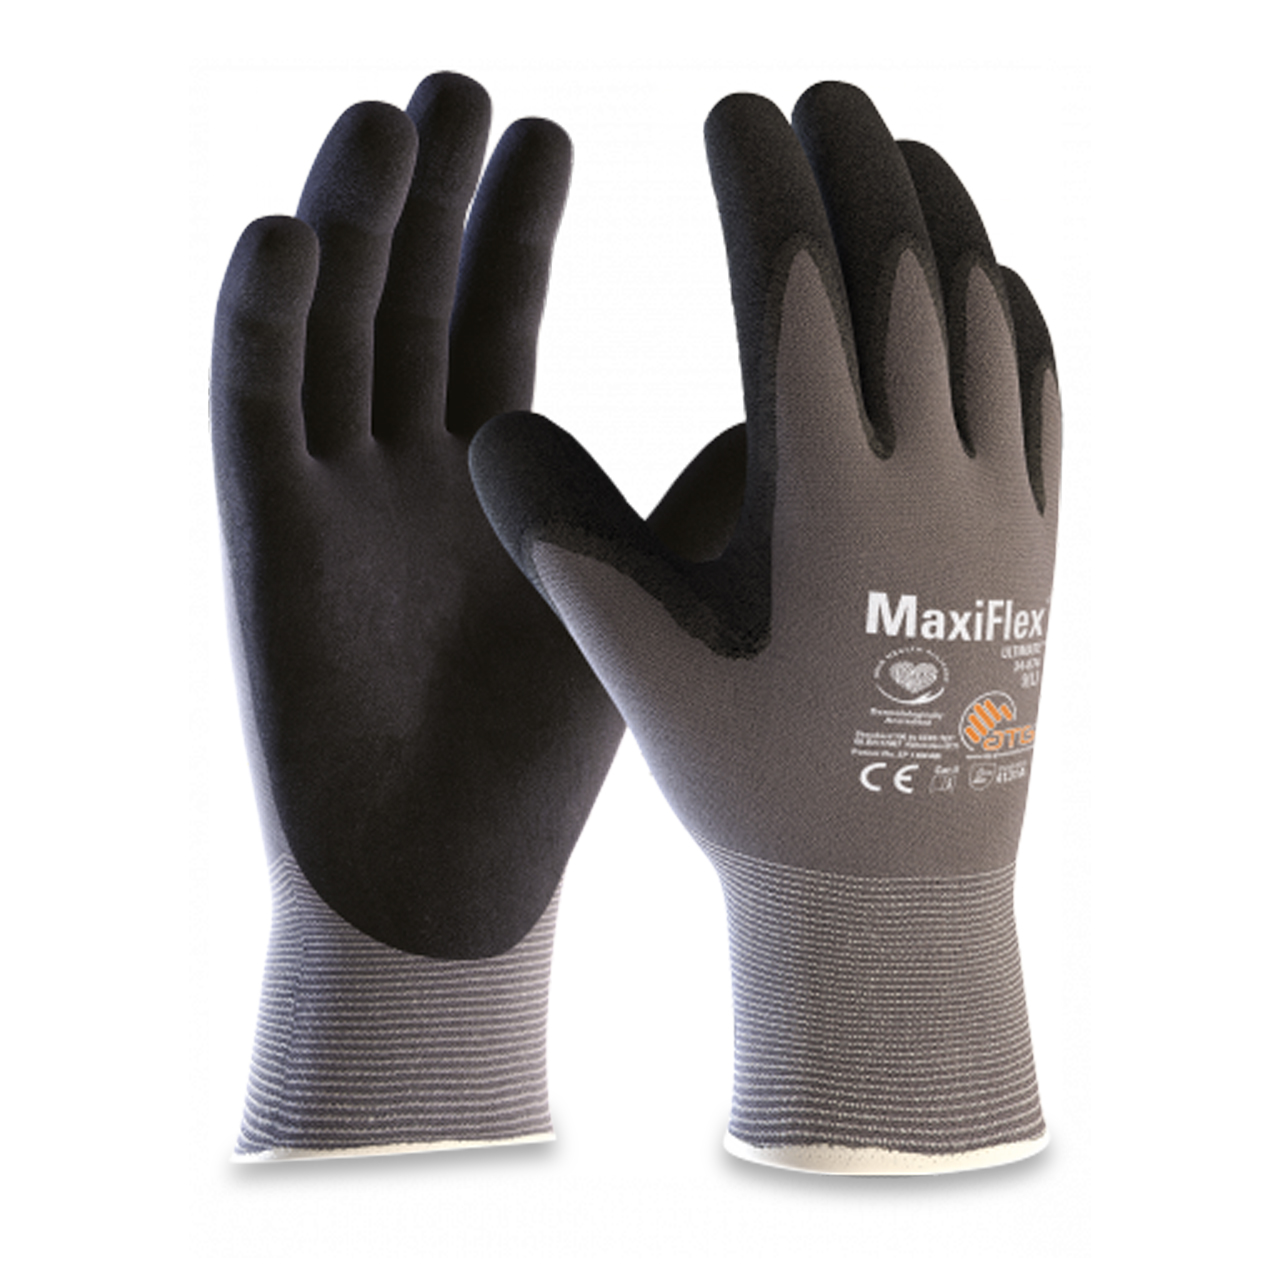 MaxiFlex Ultimate 34-874 noir/gris